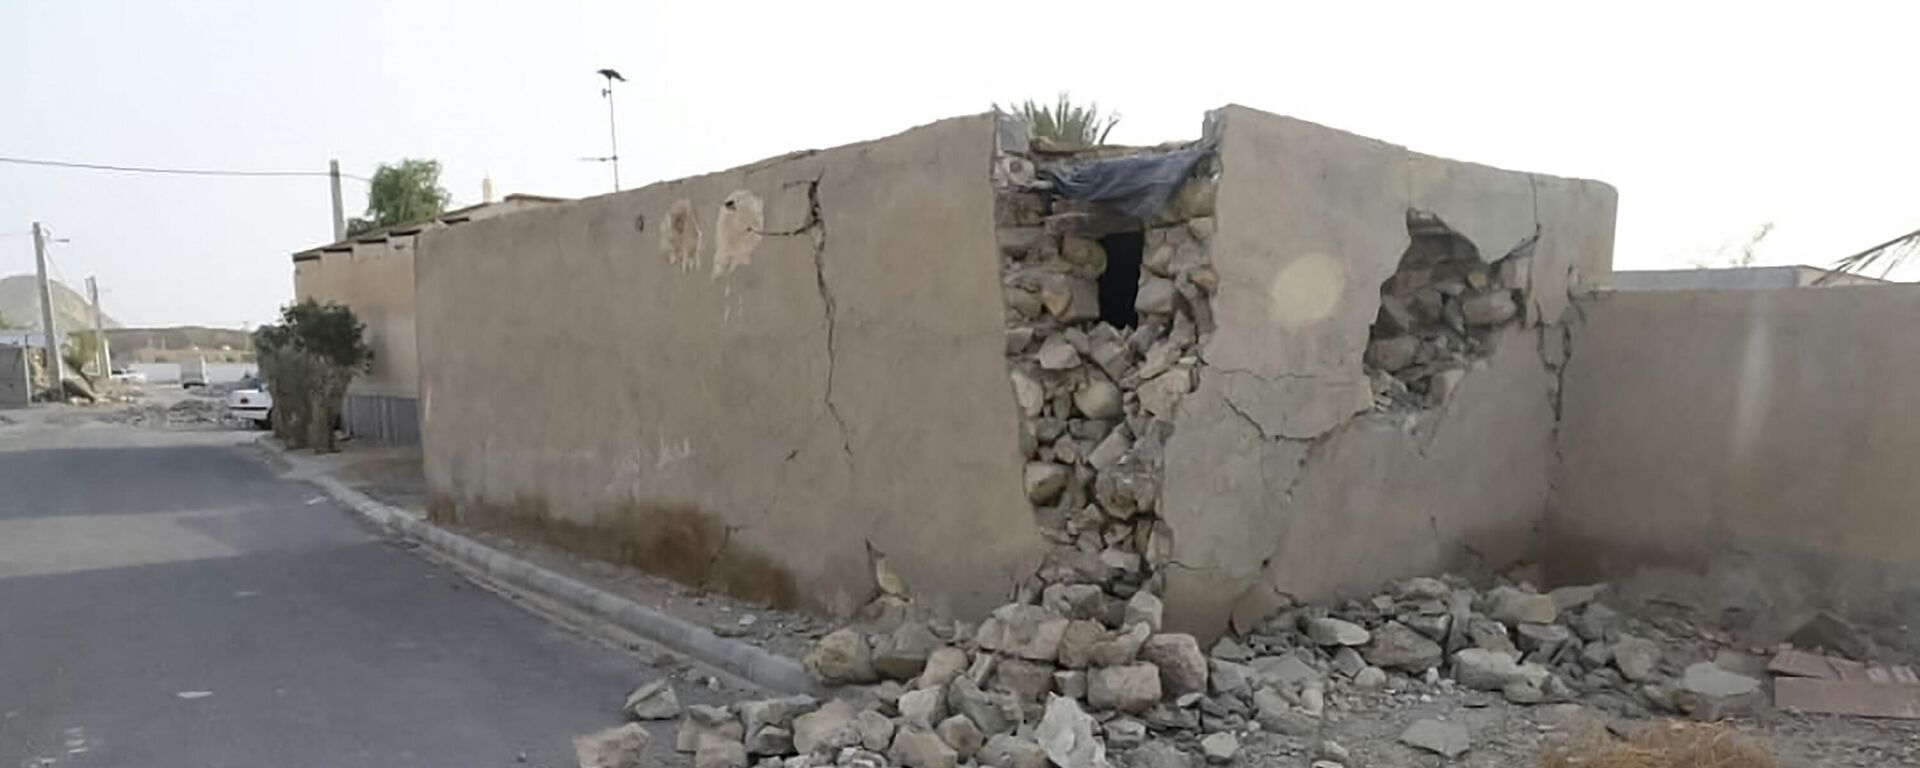 تداعيات زلزال قوي ضرب محافظة هرمزغان جنوب إيران، 2 يوليو 2022 - سبوتنيك عربي, 1920, 27.01.2023